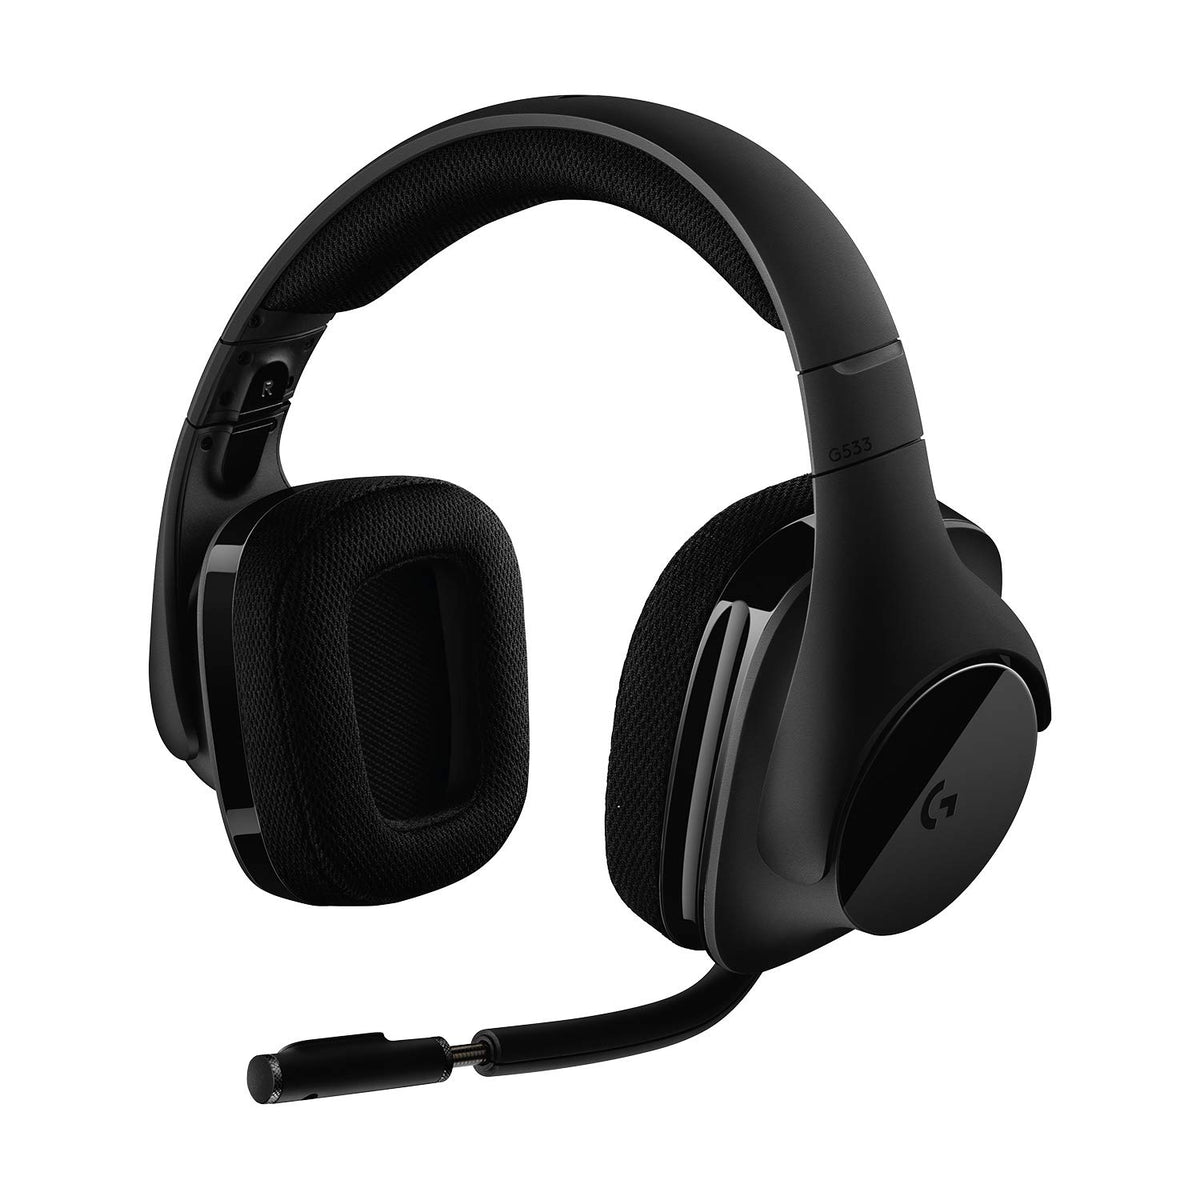 Logitech G533 Draadloze Gaming Headset, 7.1 Surround sound, DTS Headphone:X, 40mm Pro-G drivers, Noise Cancelling Microfoon, 2.4GHz draadloos, Lichtgewicht, Batterijduur 15 uur, PC/Mac - Zwart